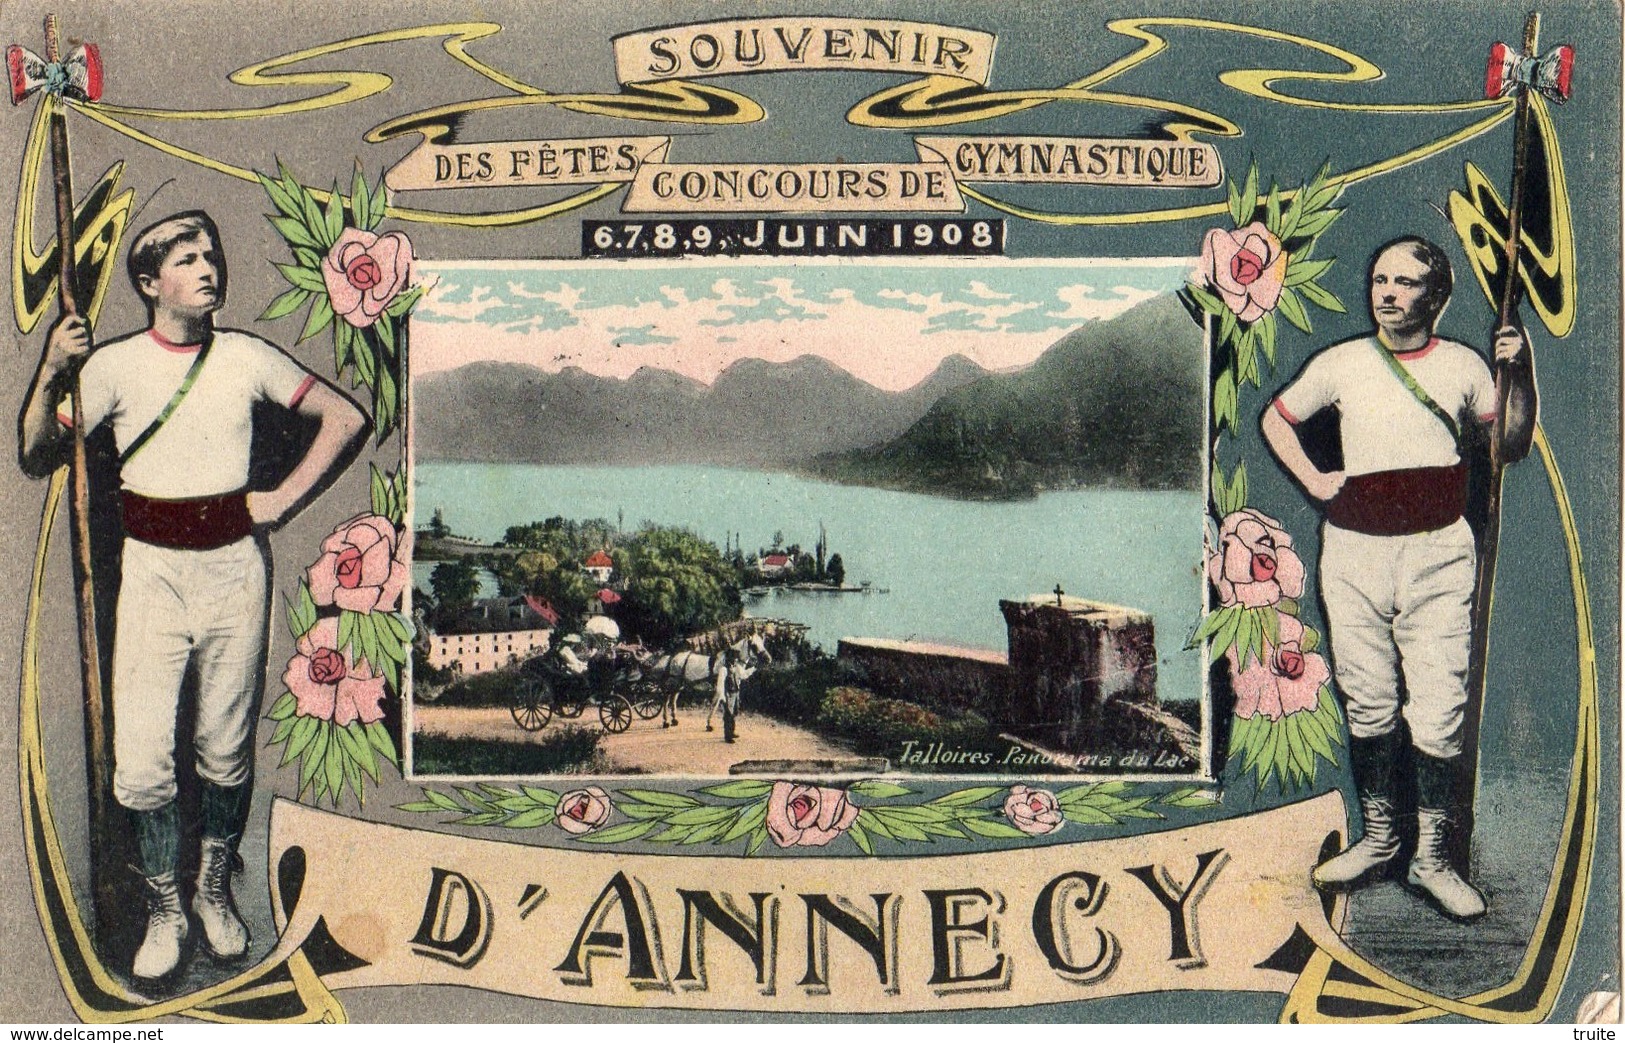 SOUVENIR DES FETES CONCOURS DE GYMNASTIQUE 6,7,8,9 JUIN 1908 D'ANNECY - Annecy